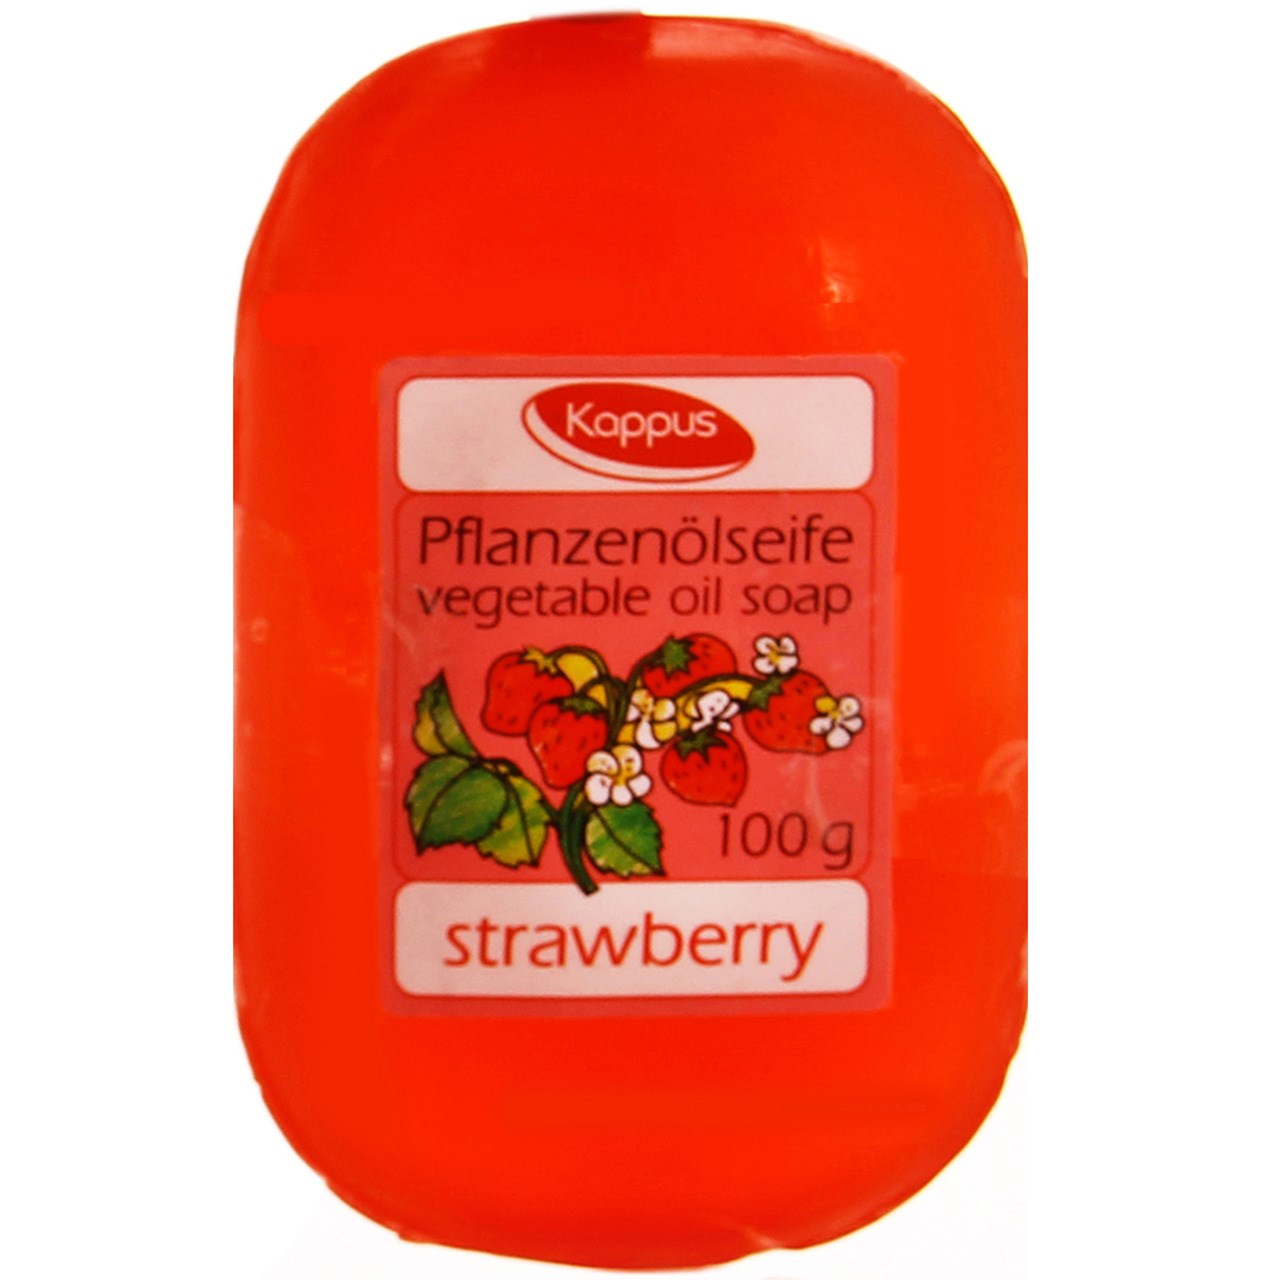 صابون گلیسرینه کاپوس مدل Strawberry مقدار 100 گرم